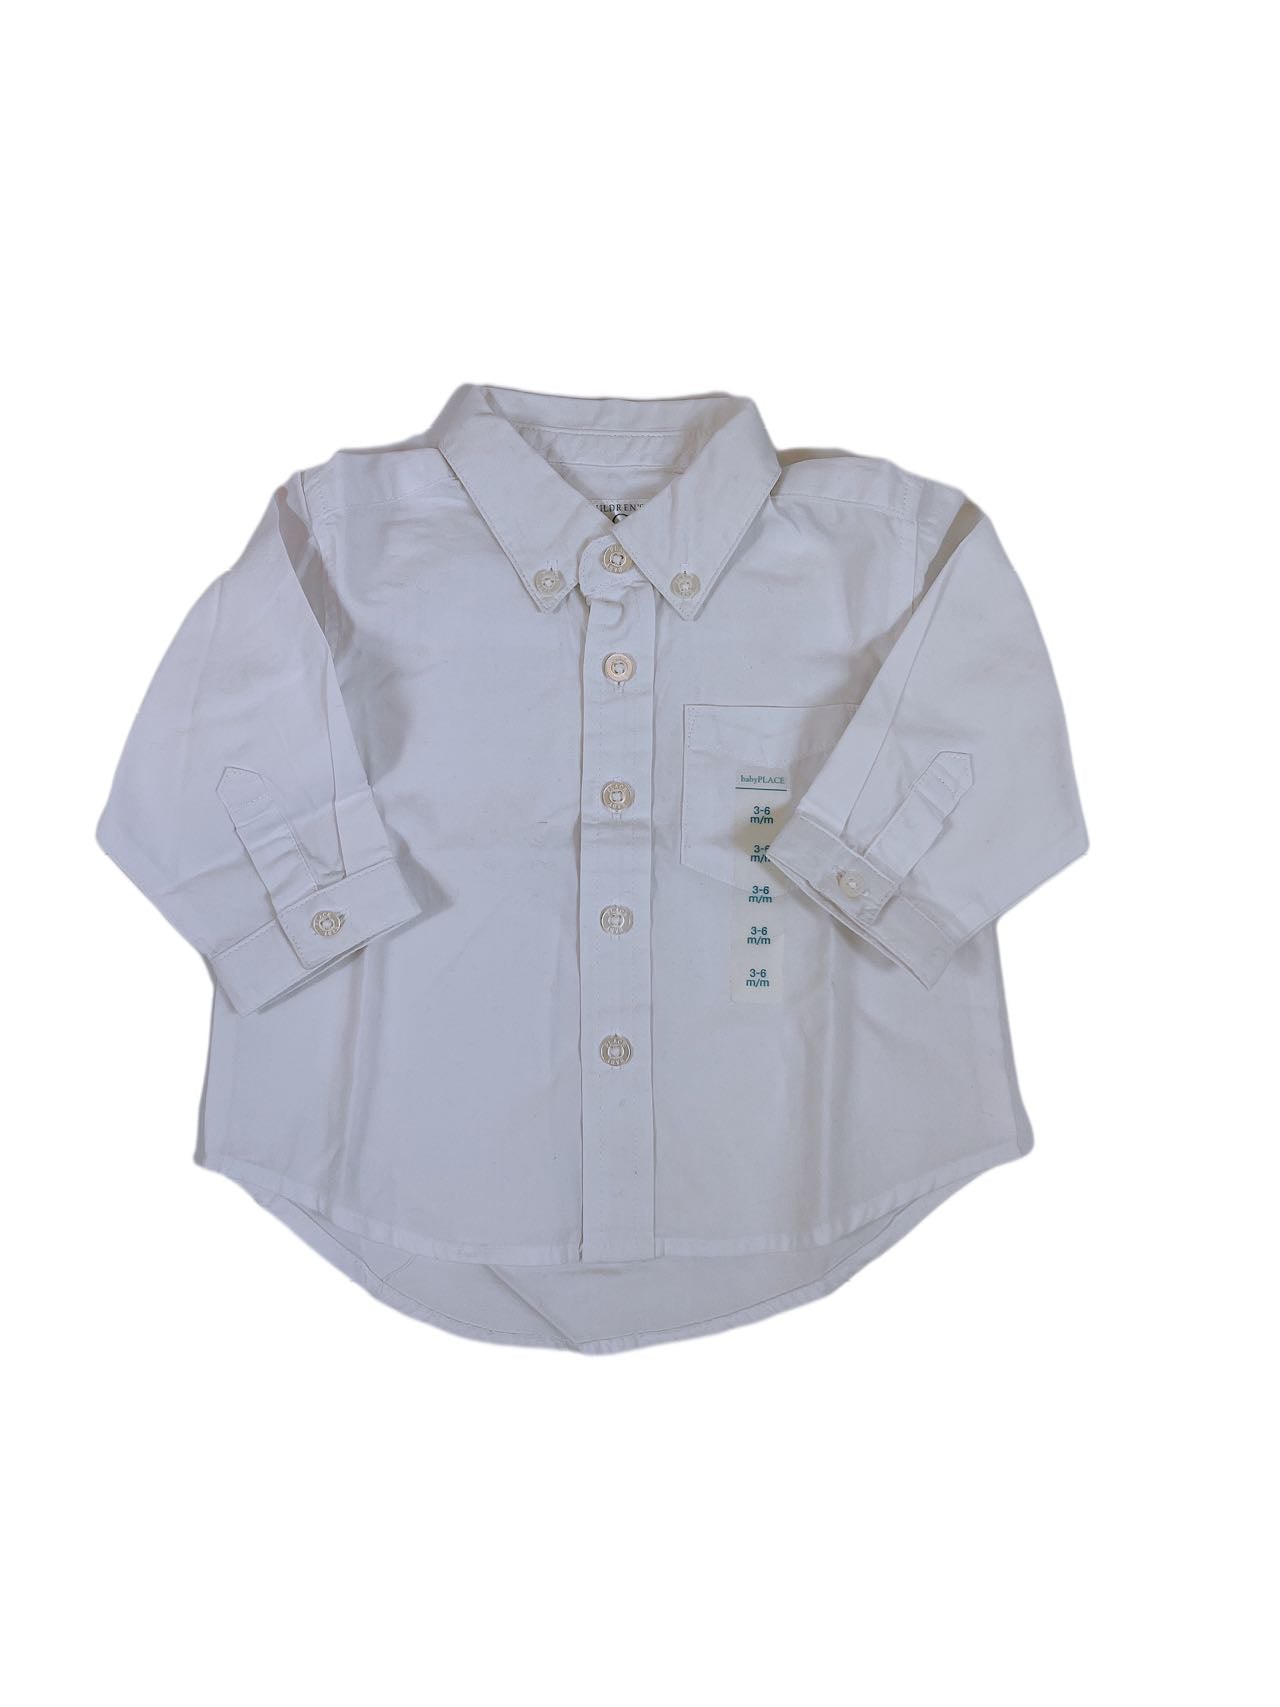 The Children Place Baby Uniform Shirt(3M)-Unworn